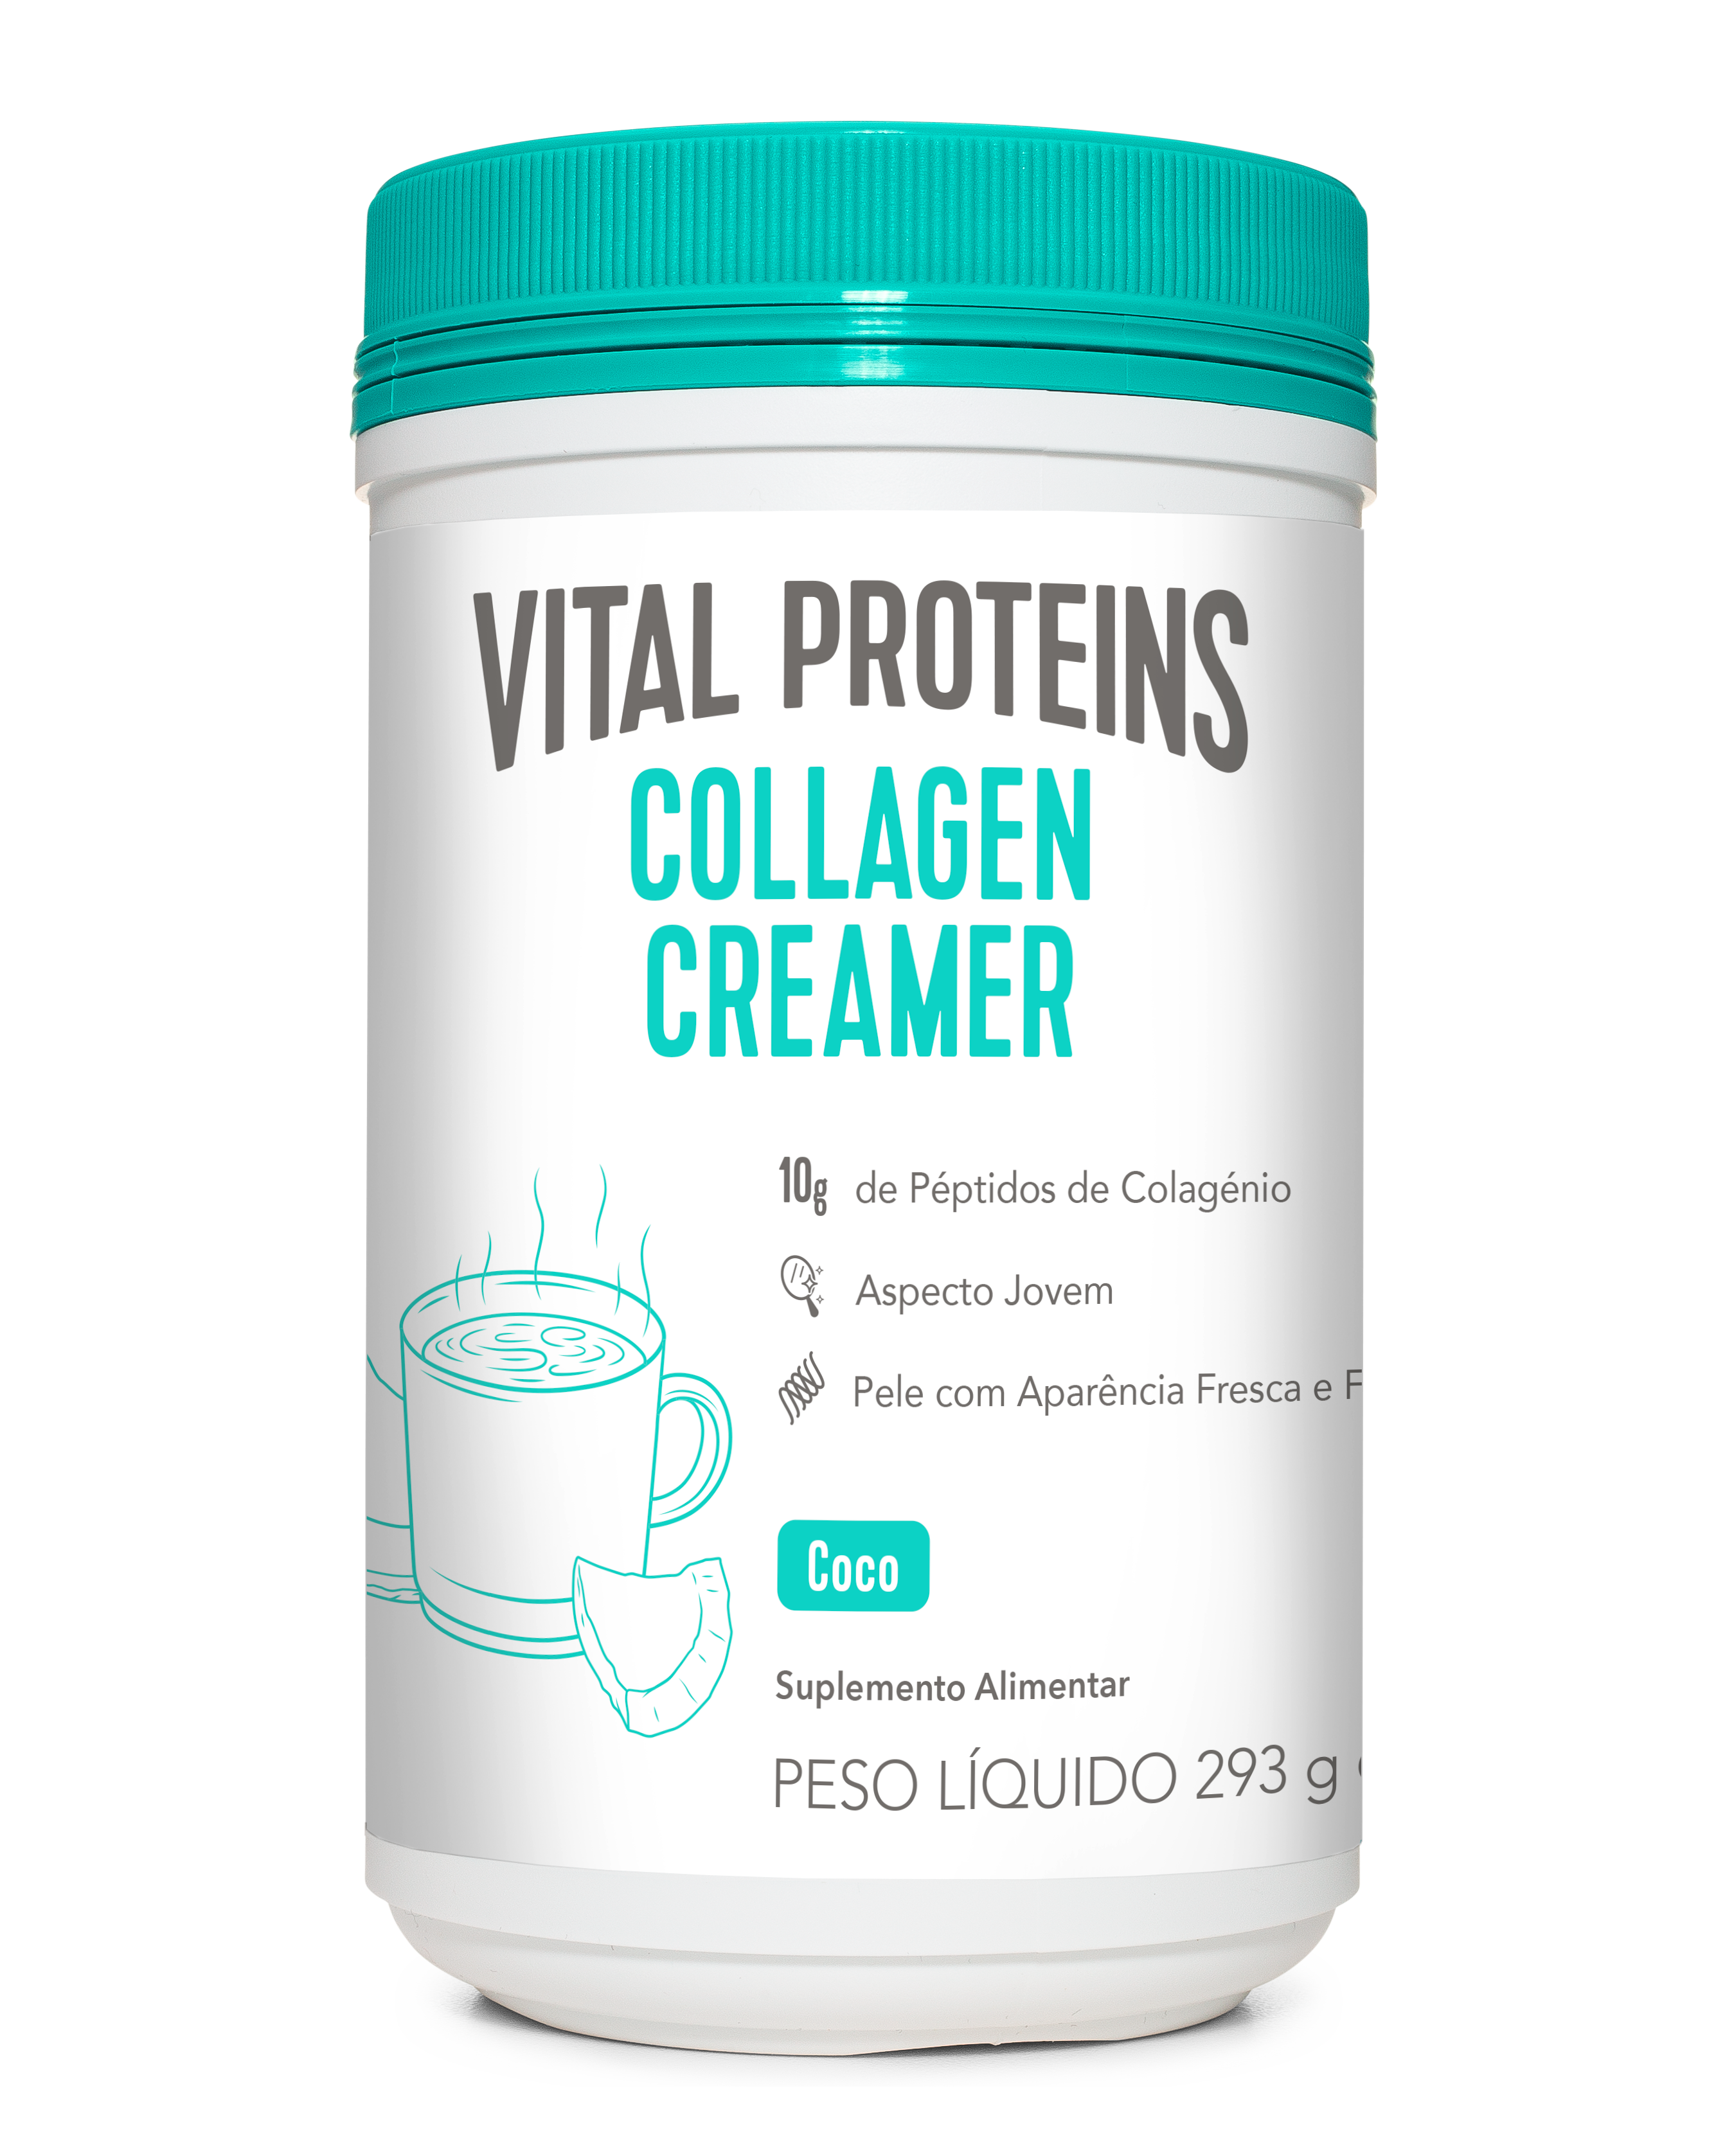 Vital Proteins Collagen Creamer Coco